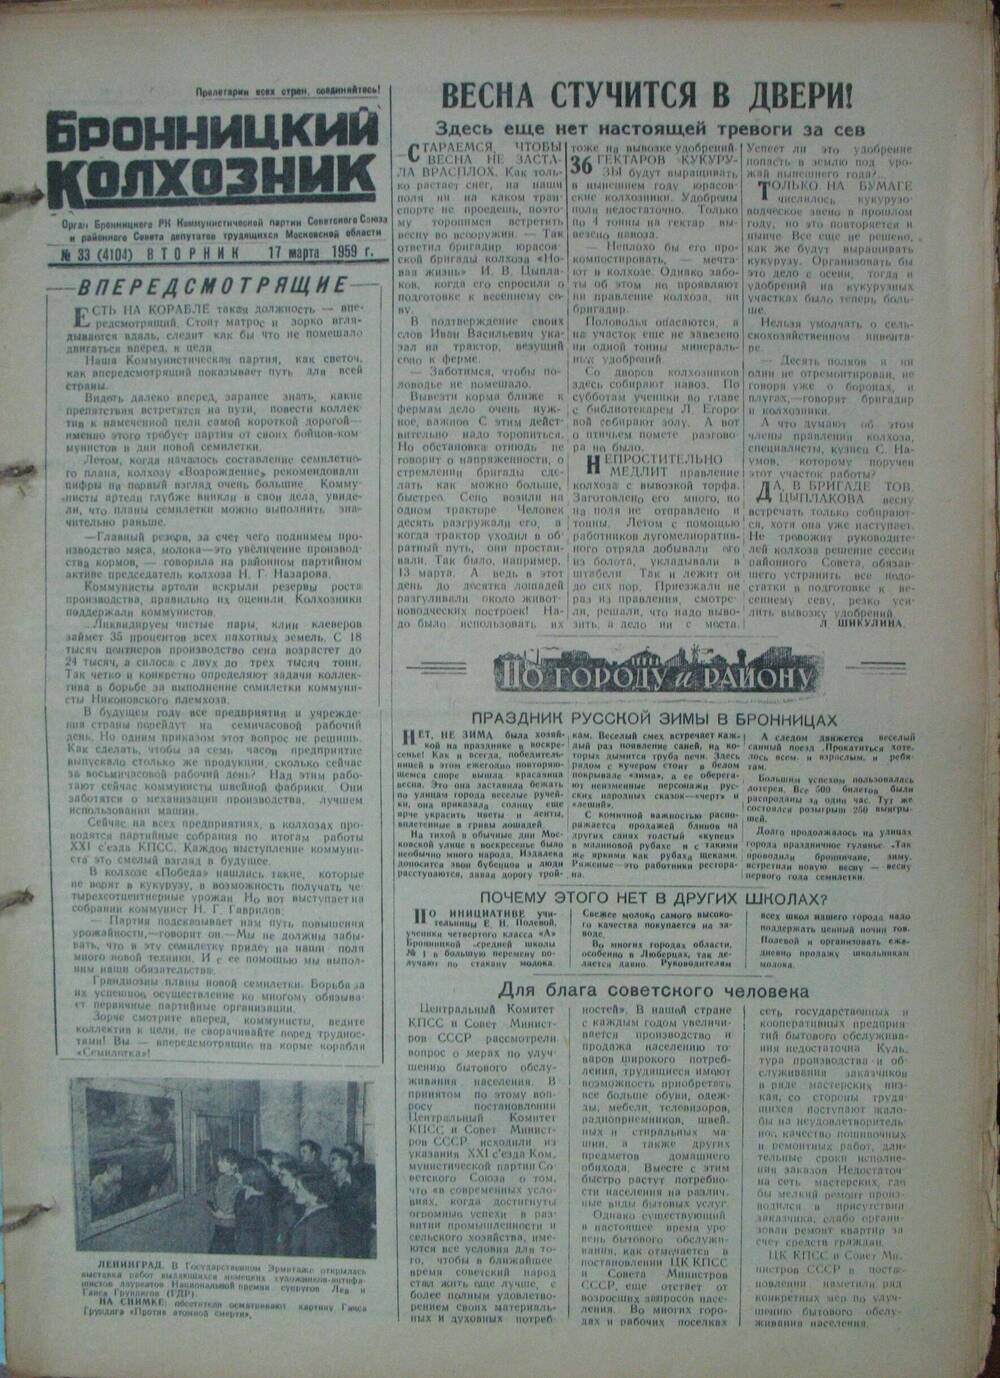 Бронницкий колхозник,  газета № 33 от 17 марта 1959г